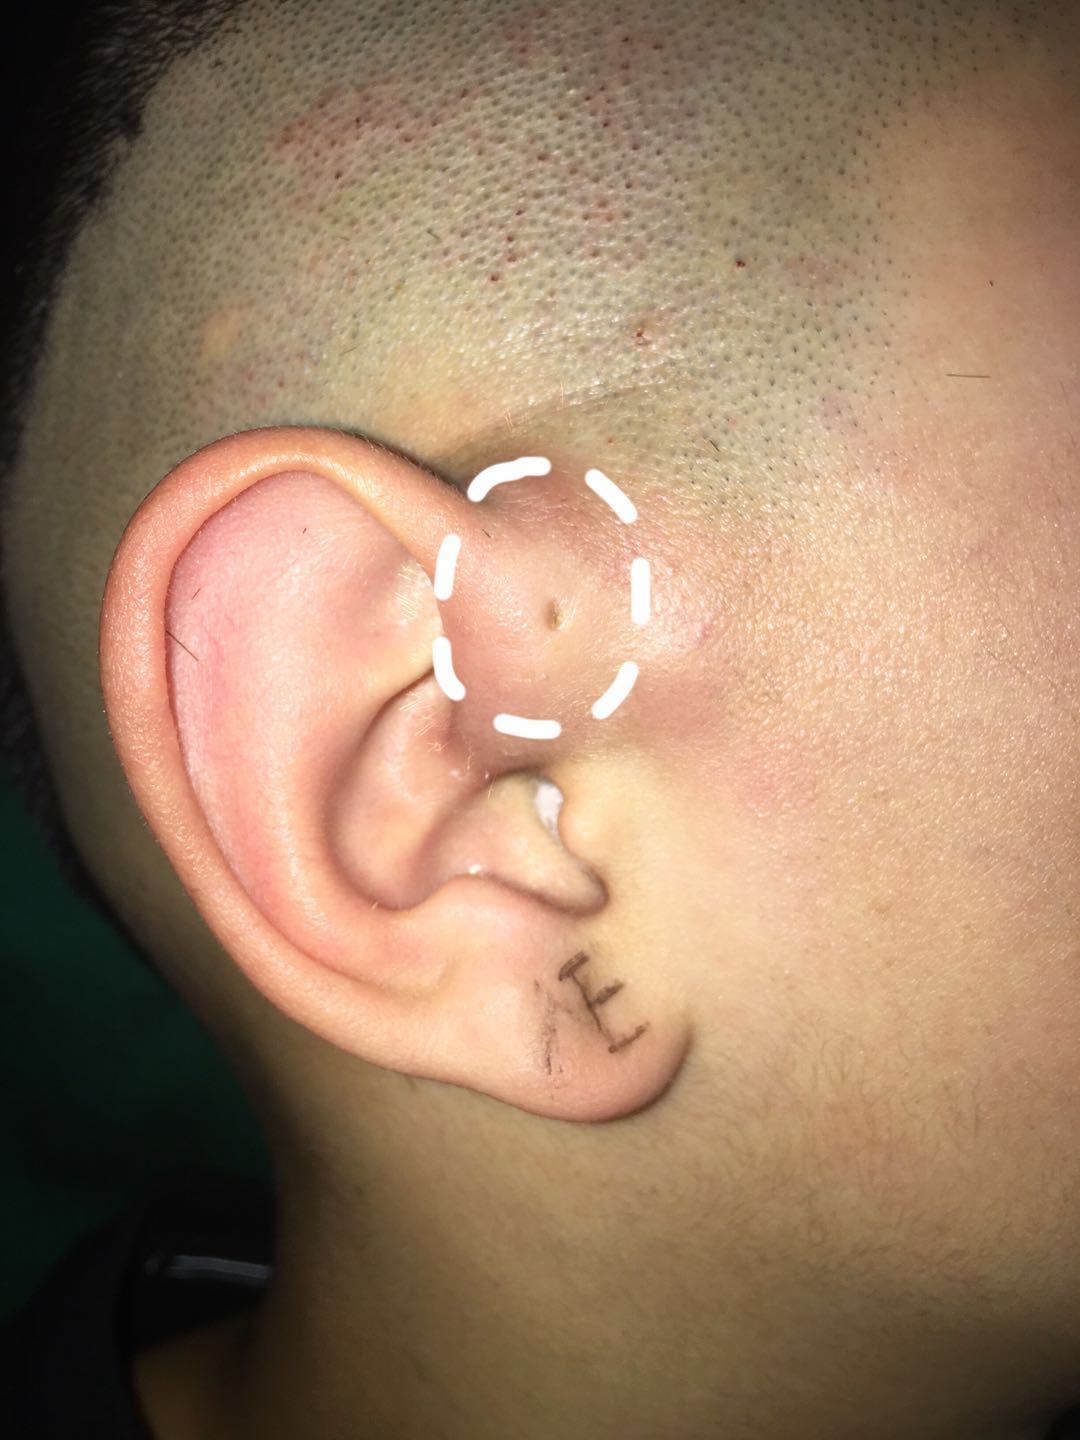 胎儿耳朵畸形是什么原因造成的 - 哔哩哔哩